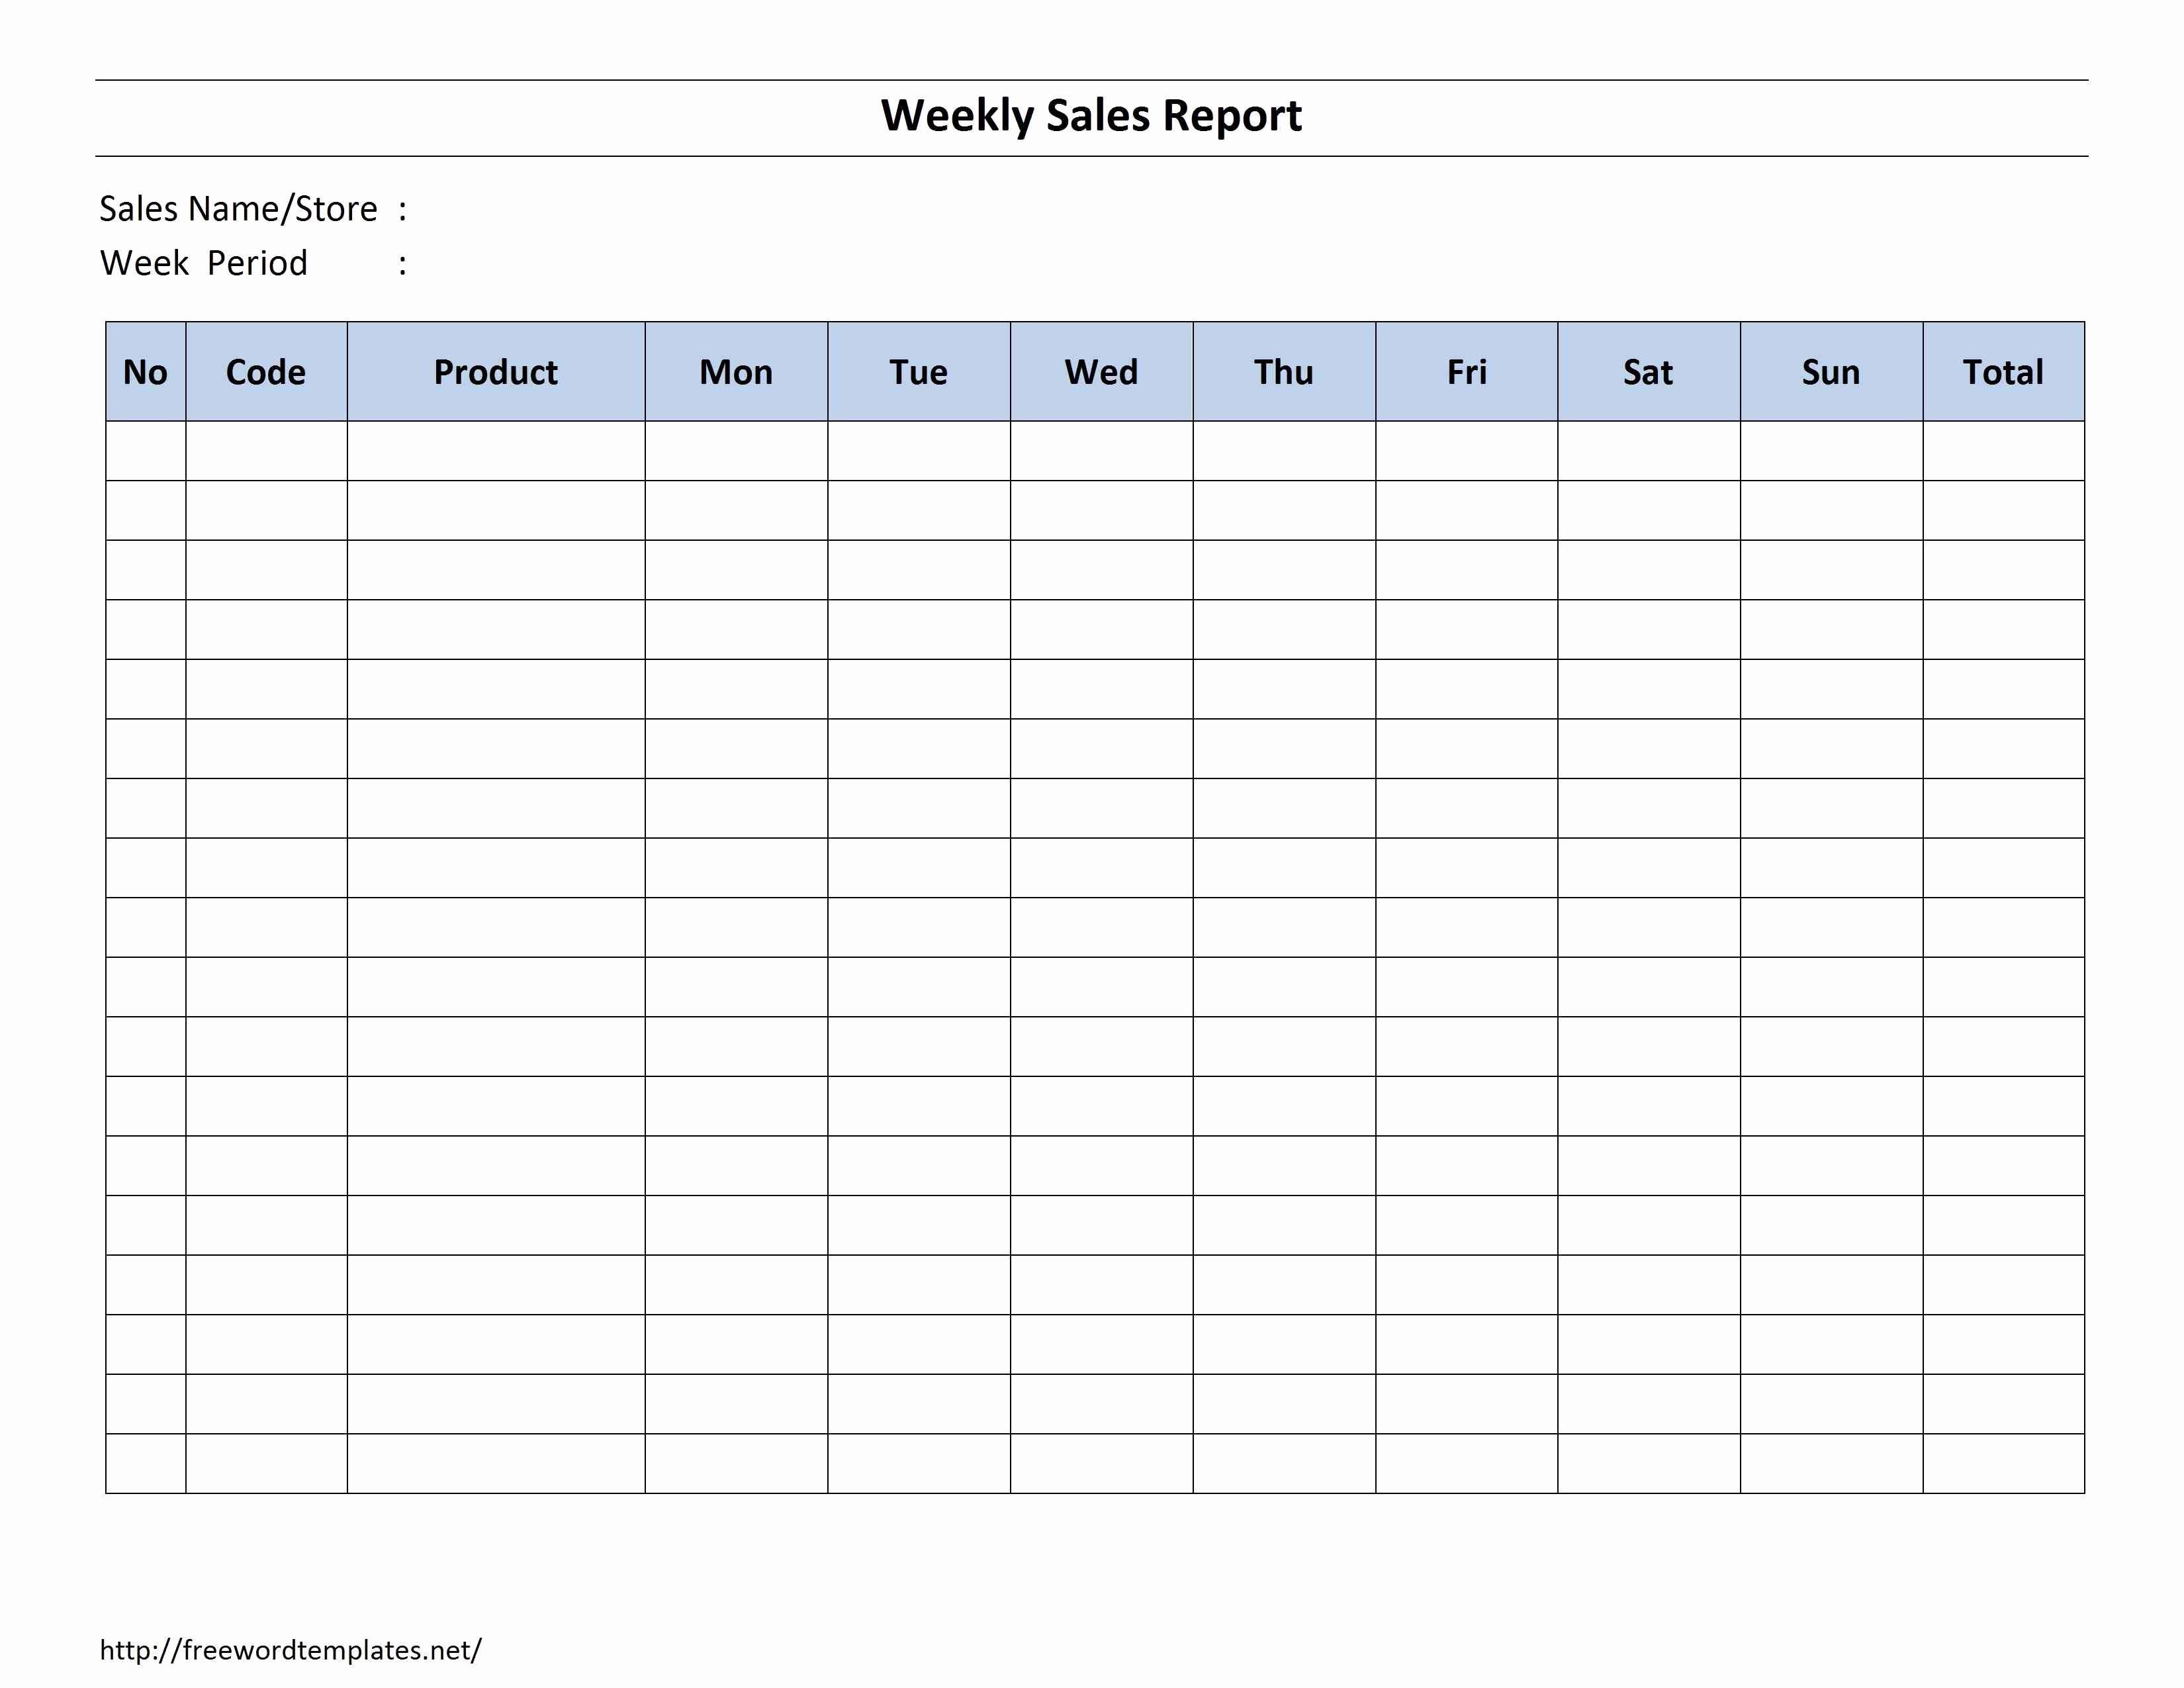 Weekly Sales Report Template Beautiful Weekly Sales Report